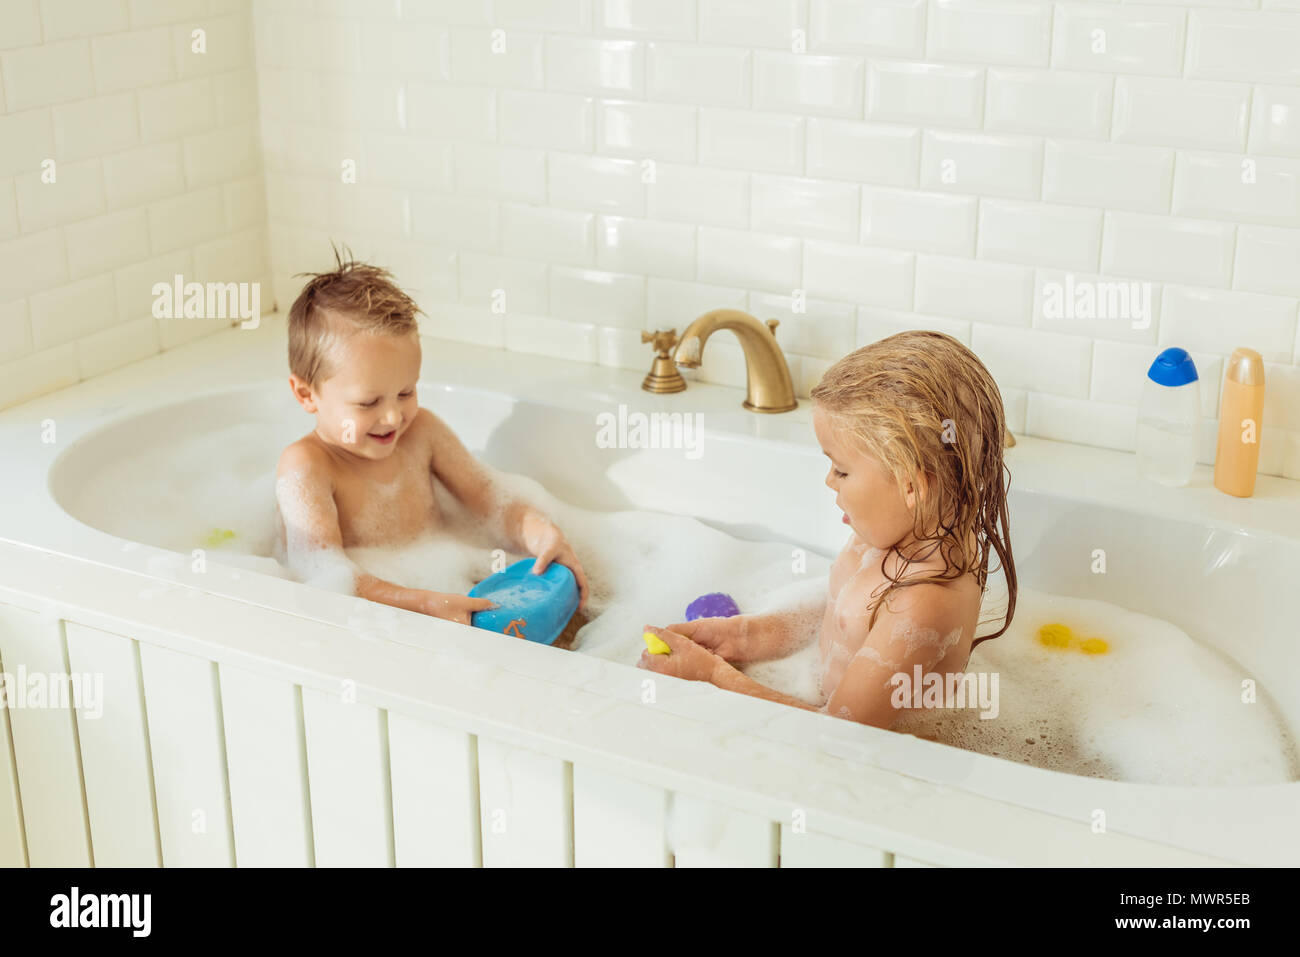 Adorable gerne kleine Kinder spielen zusammen in der Badewanne Stockfoto